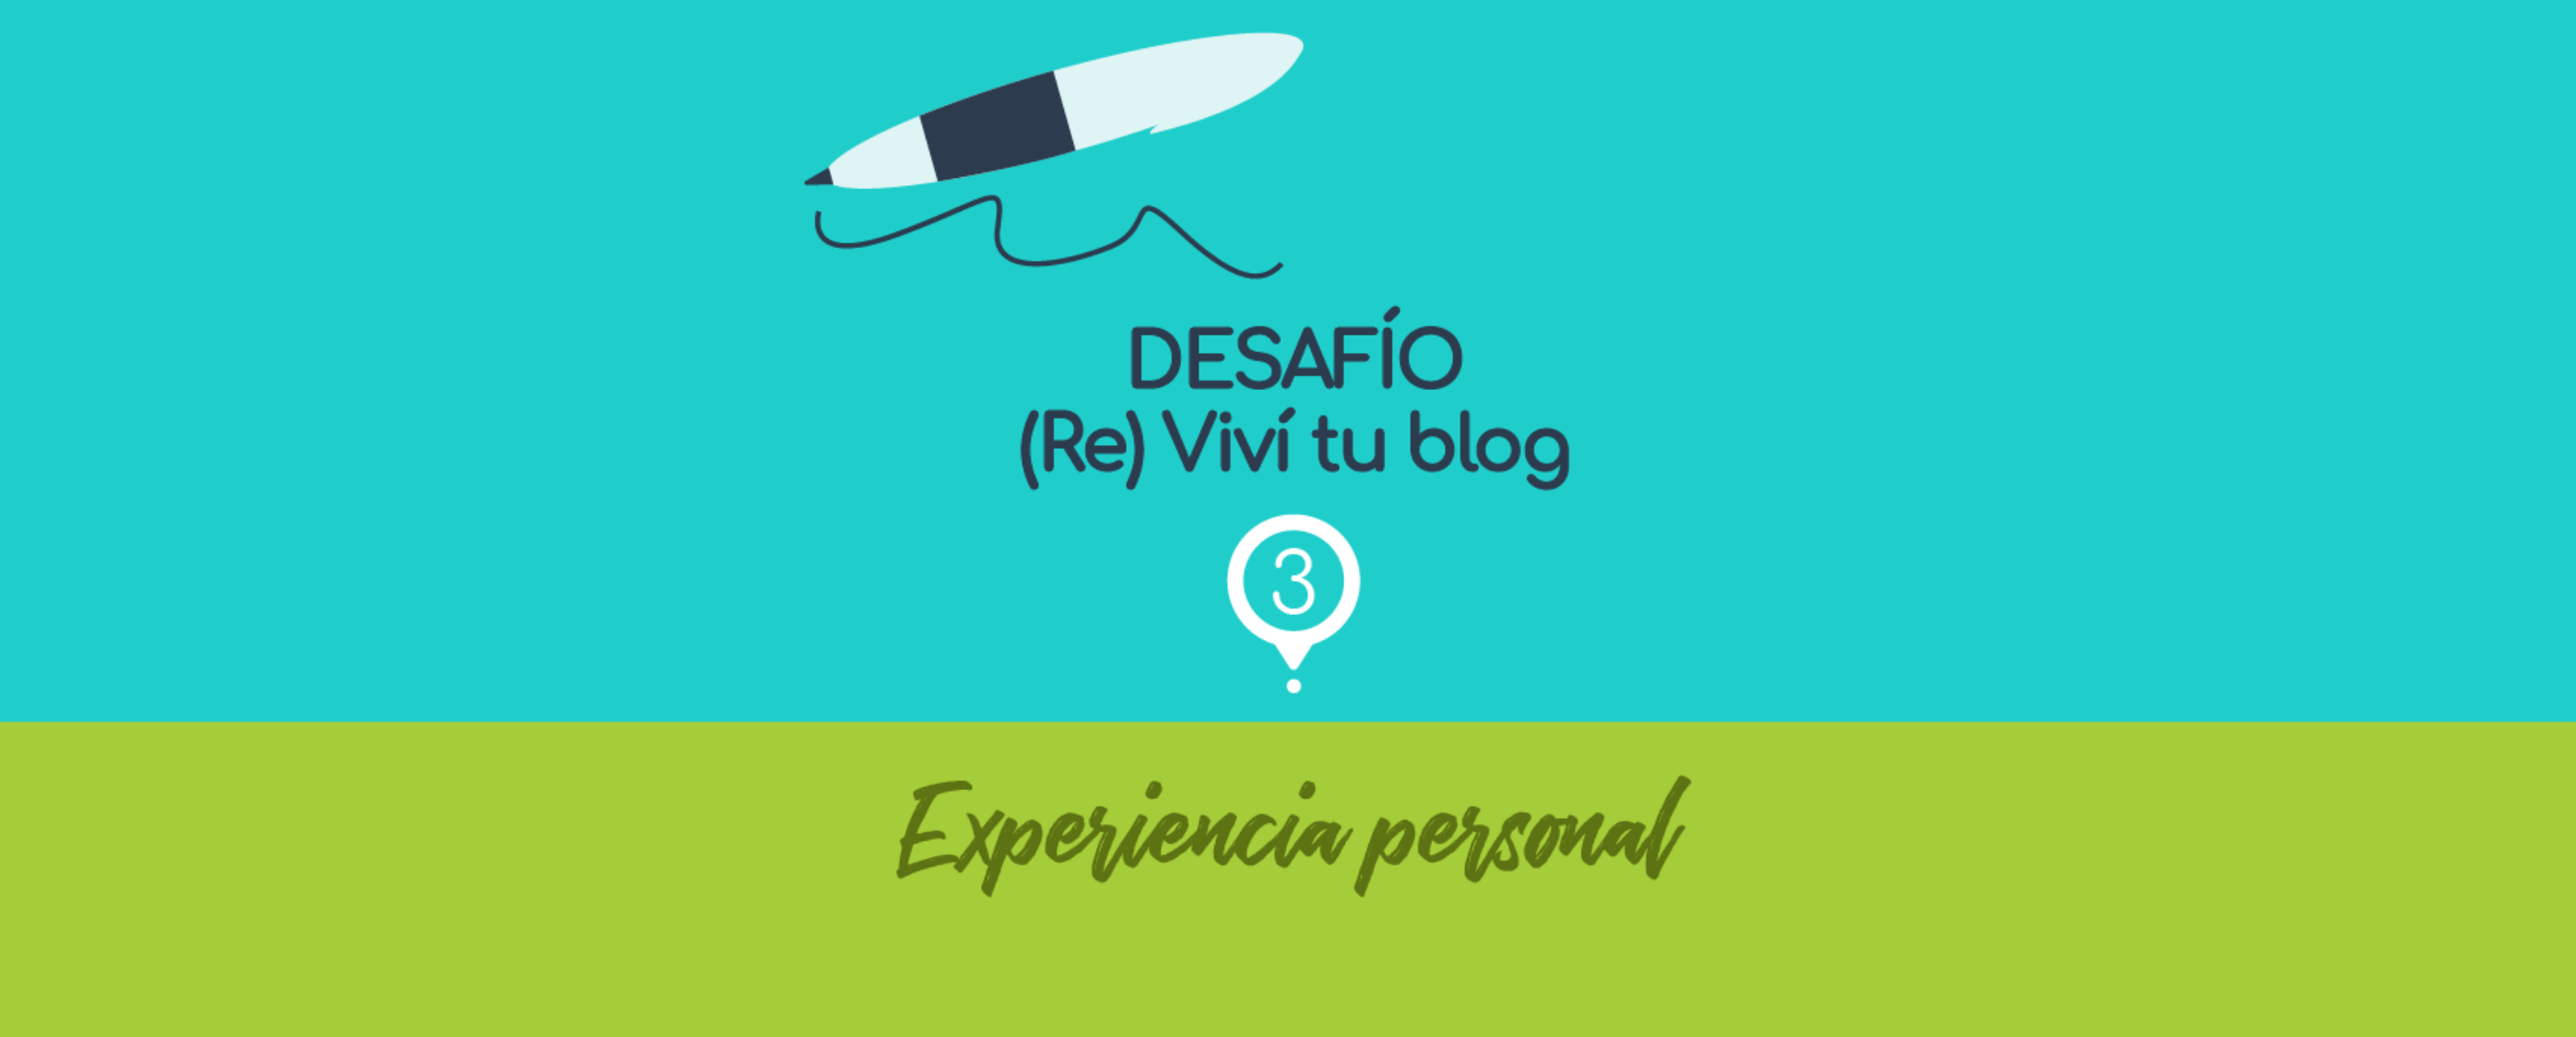 Reviví tu blog, experiencia personal